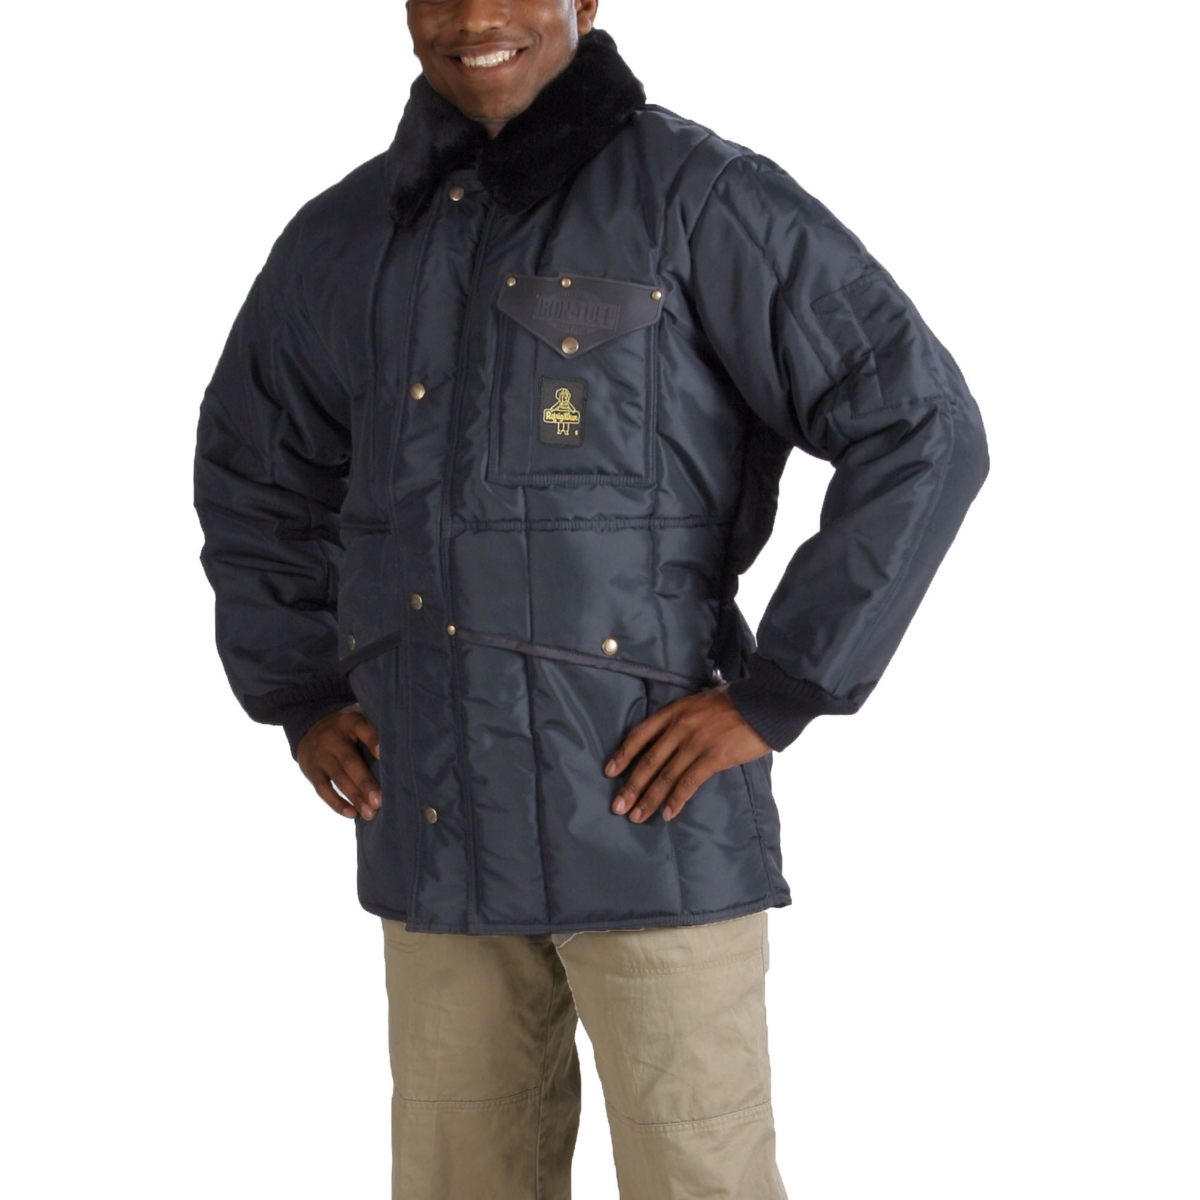 Big & Tall Iron-Tuff Jackoat Insulated Workwear Jacket with Fleece Collar - Navy